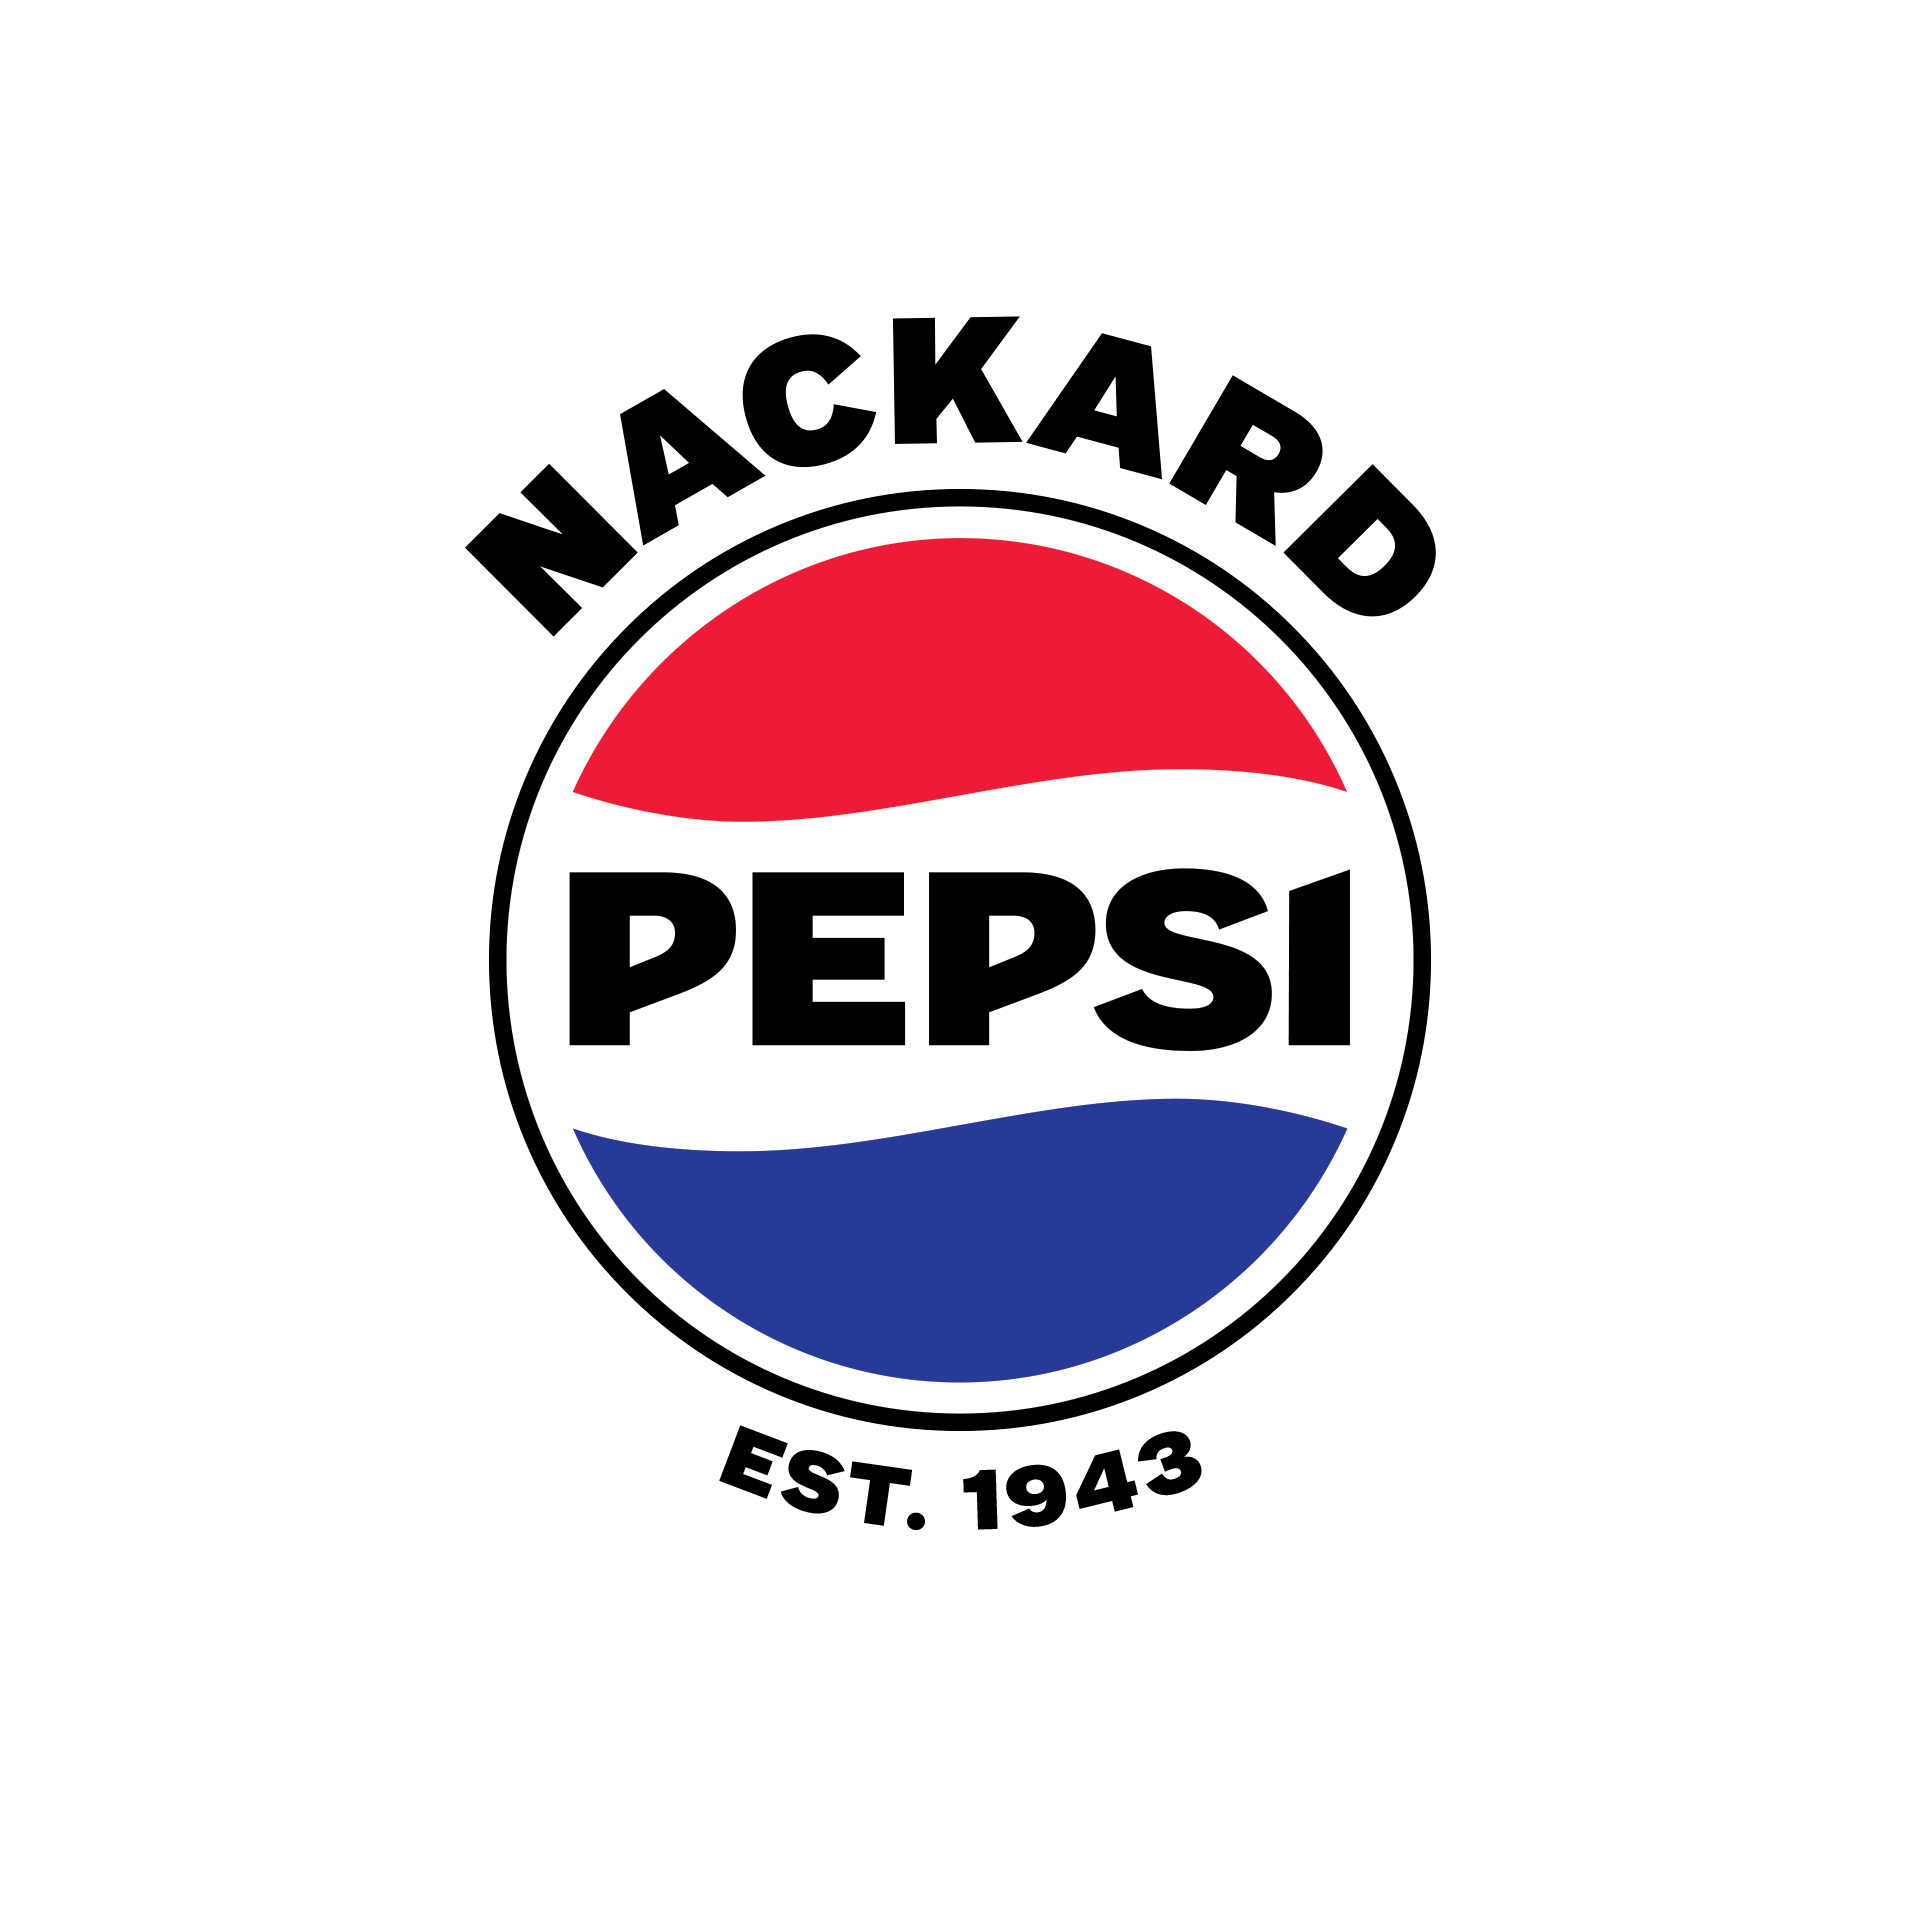 Nackard Companies/Prescott Pepsi